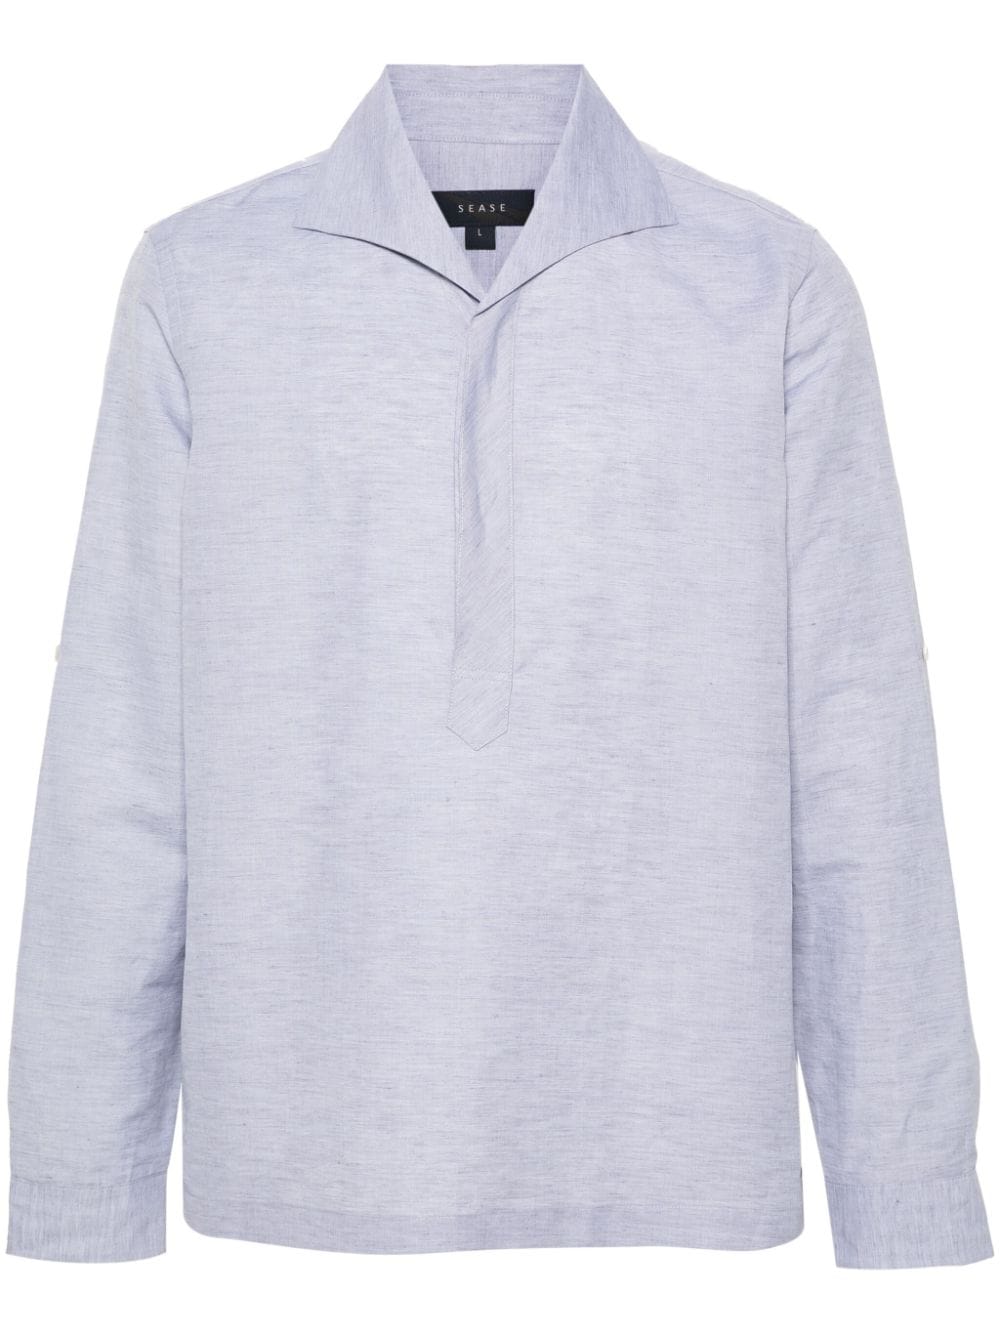 Sease half-button mélange shirt - Grey von Sease